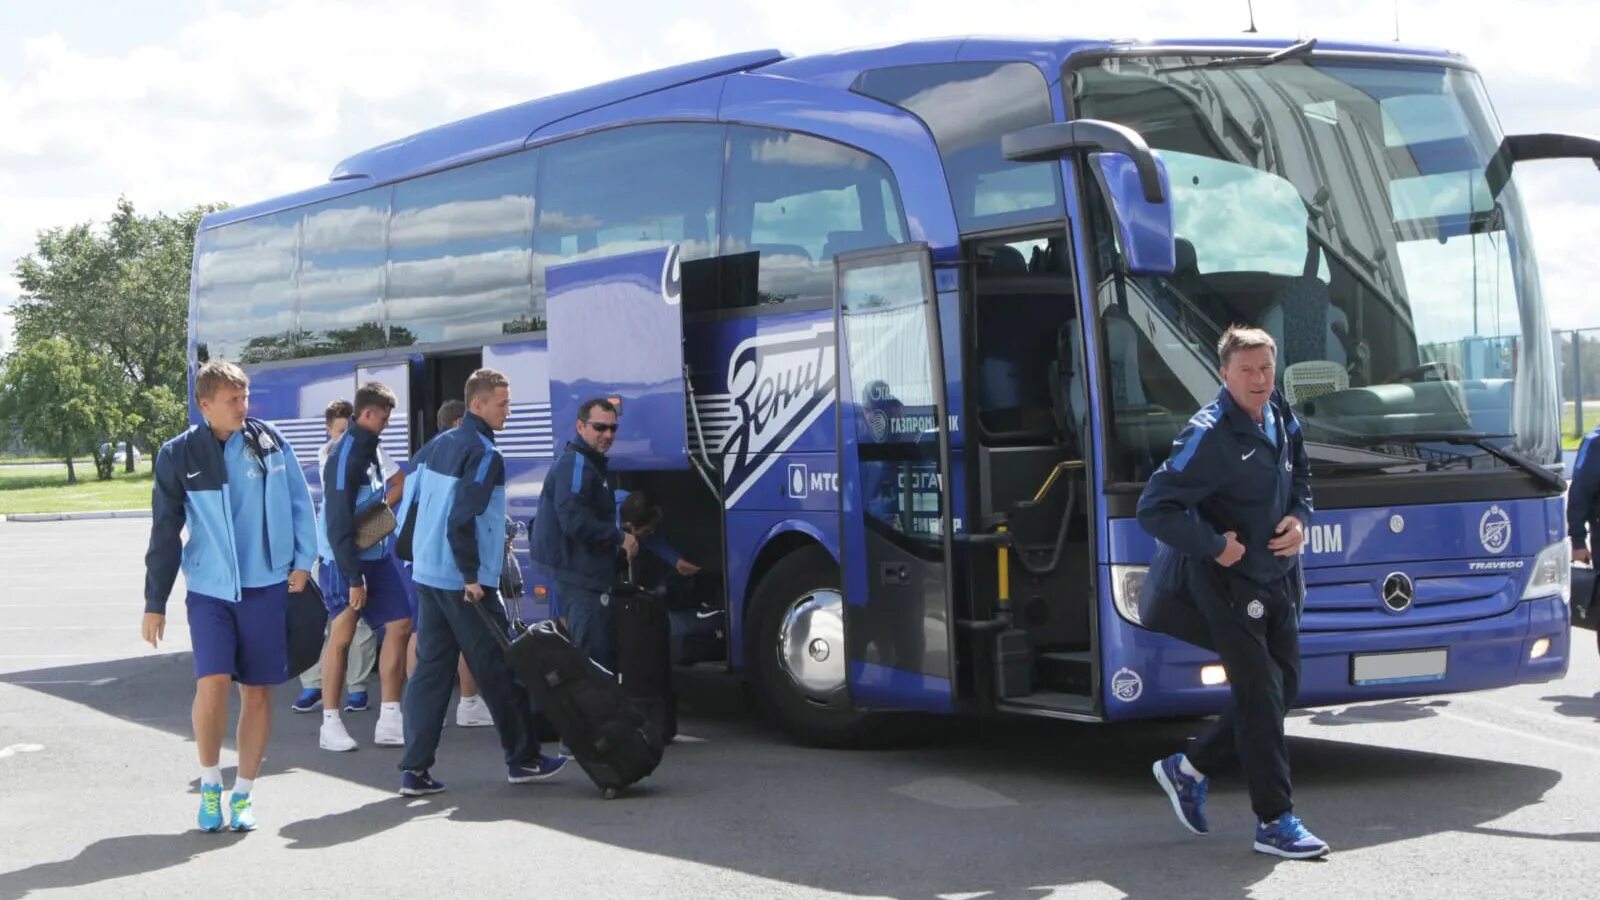 Автобус спортсмены. Автобусы футбольных команд. Автобус Зенита. Автобус для спортсменов. Автобус с футболистами.